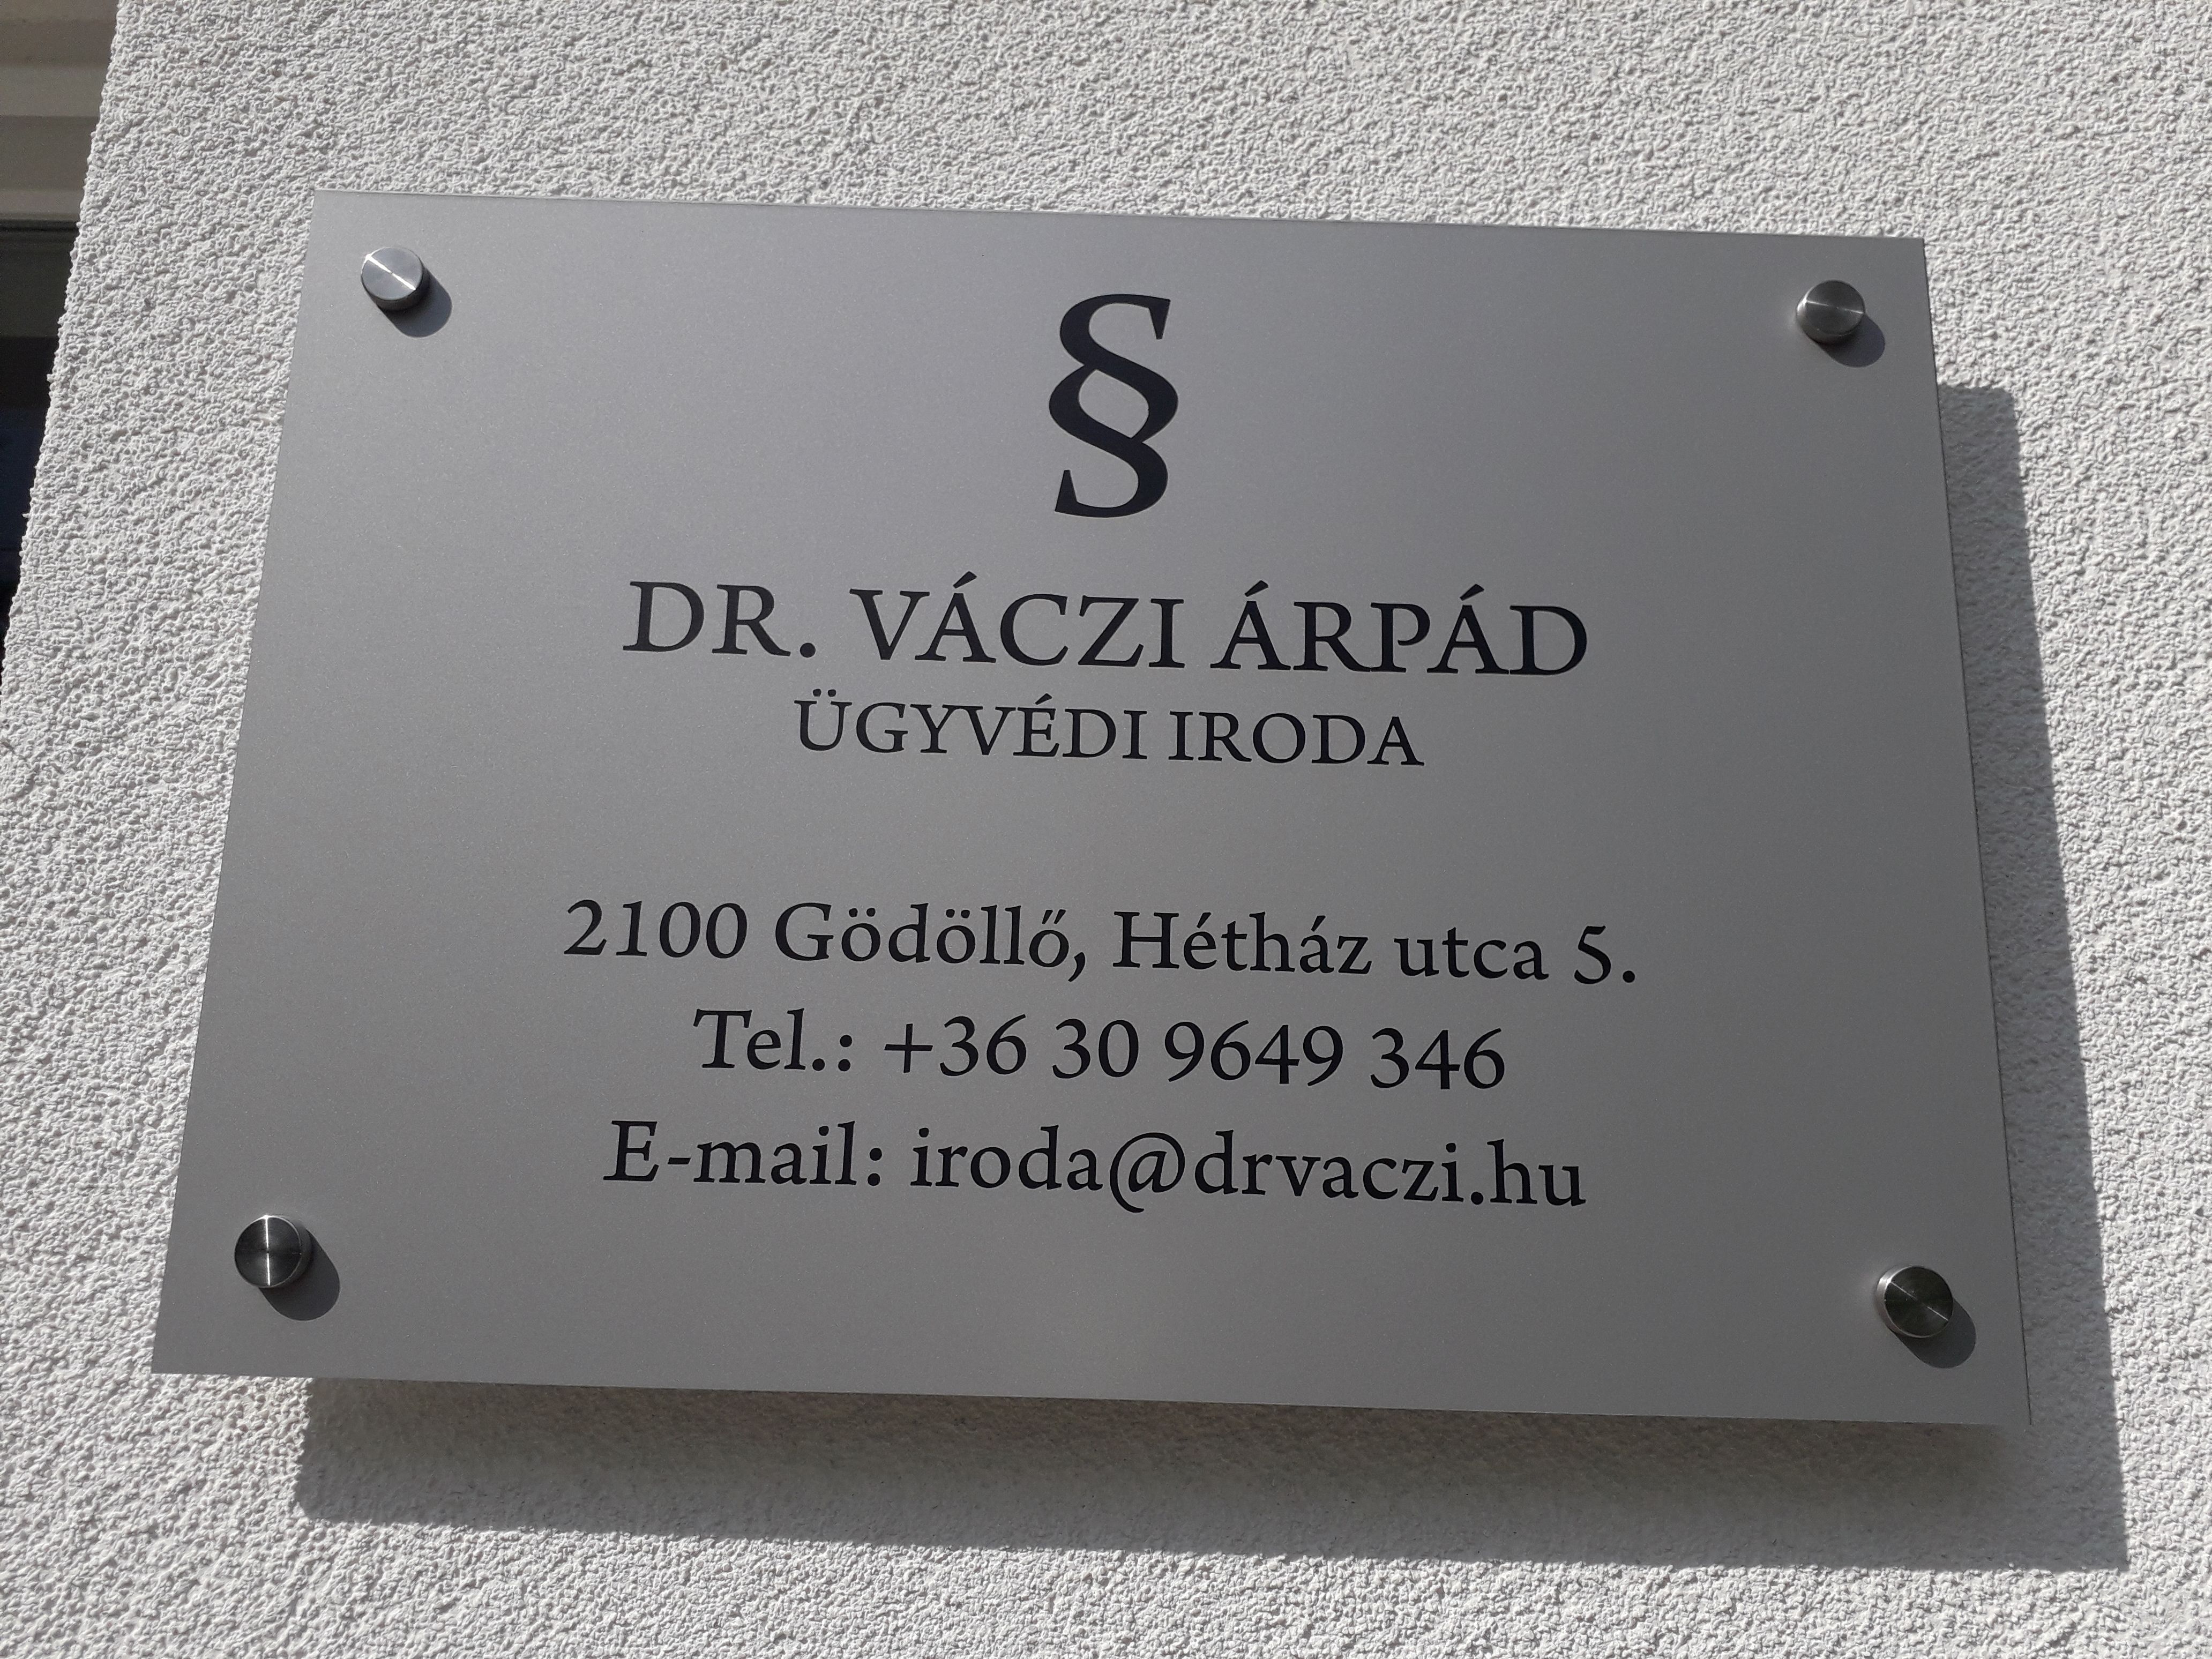 Images Dr. Váczi Árpád Ügyvédi Iroda